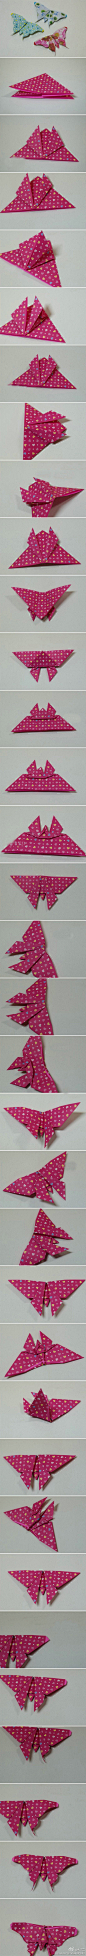 漂亮的蝴蝶折纸